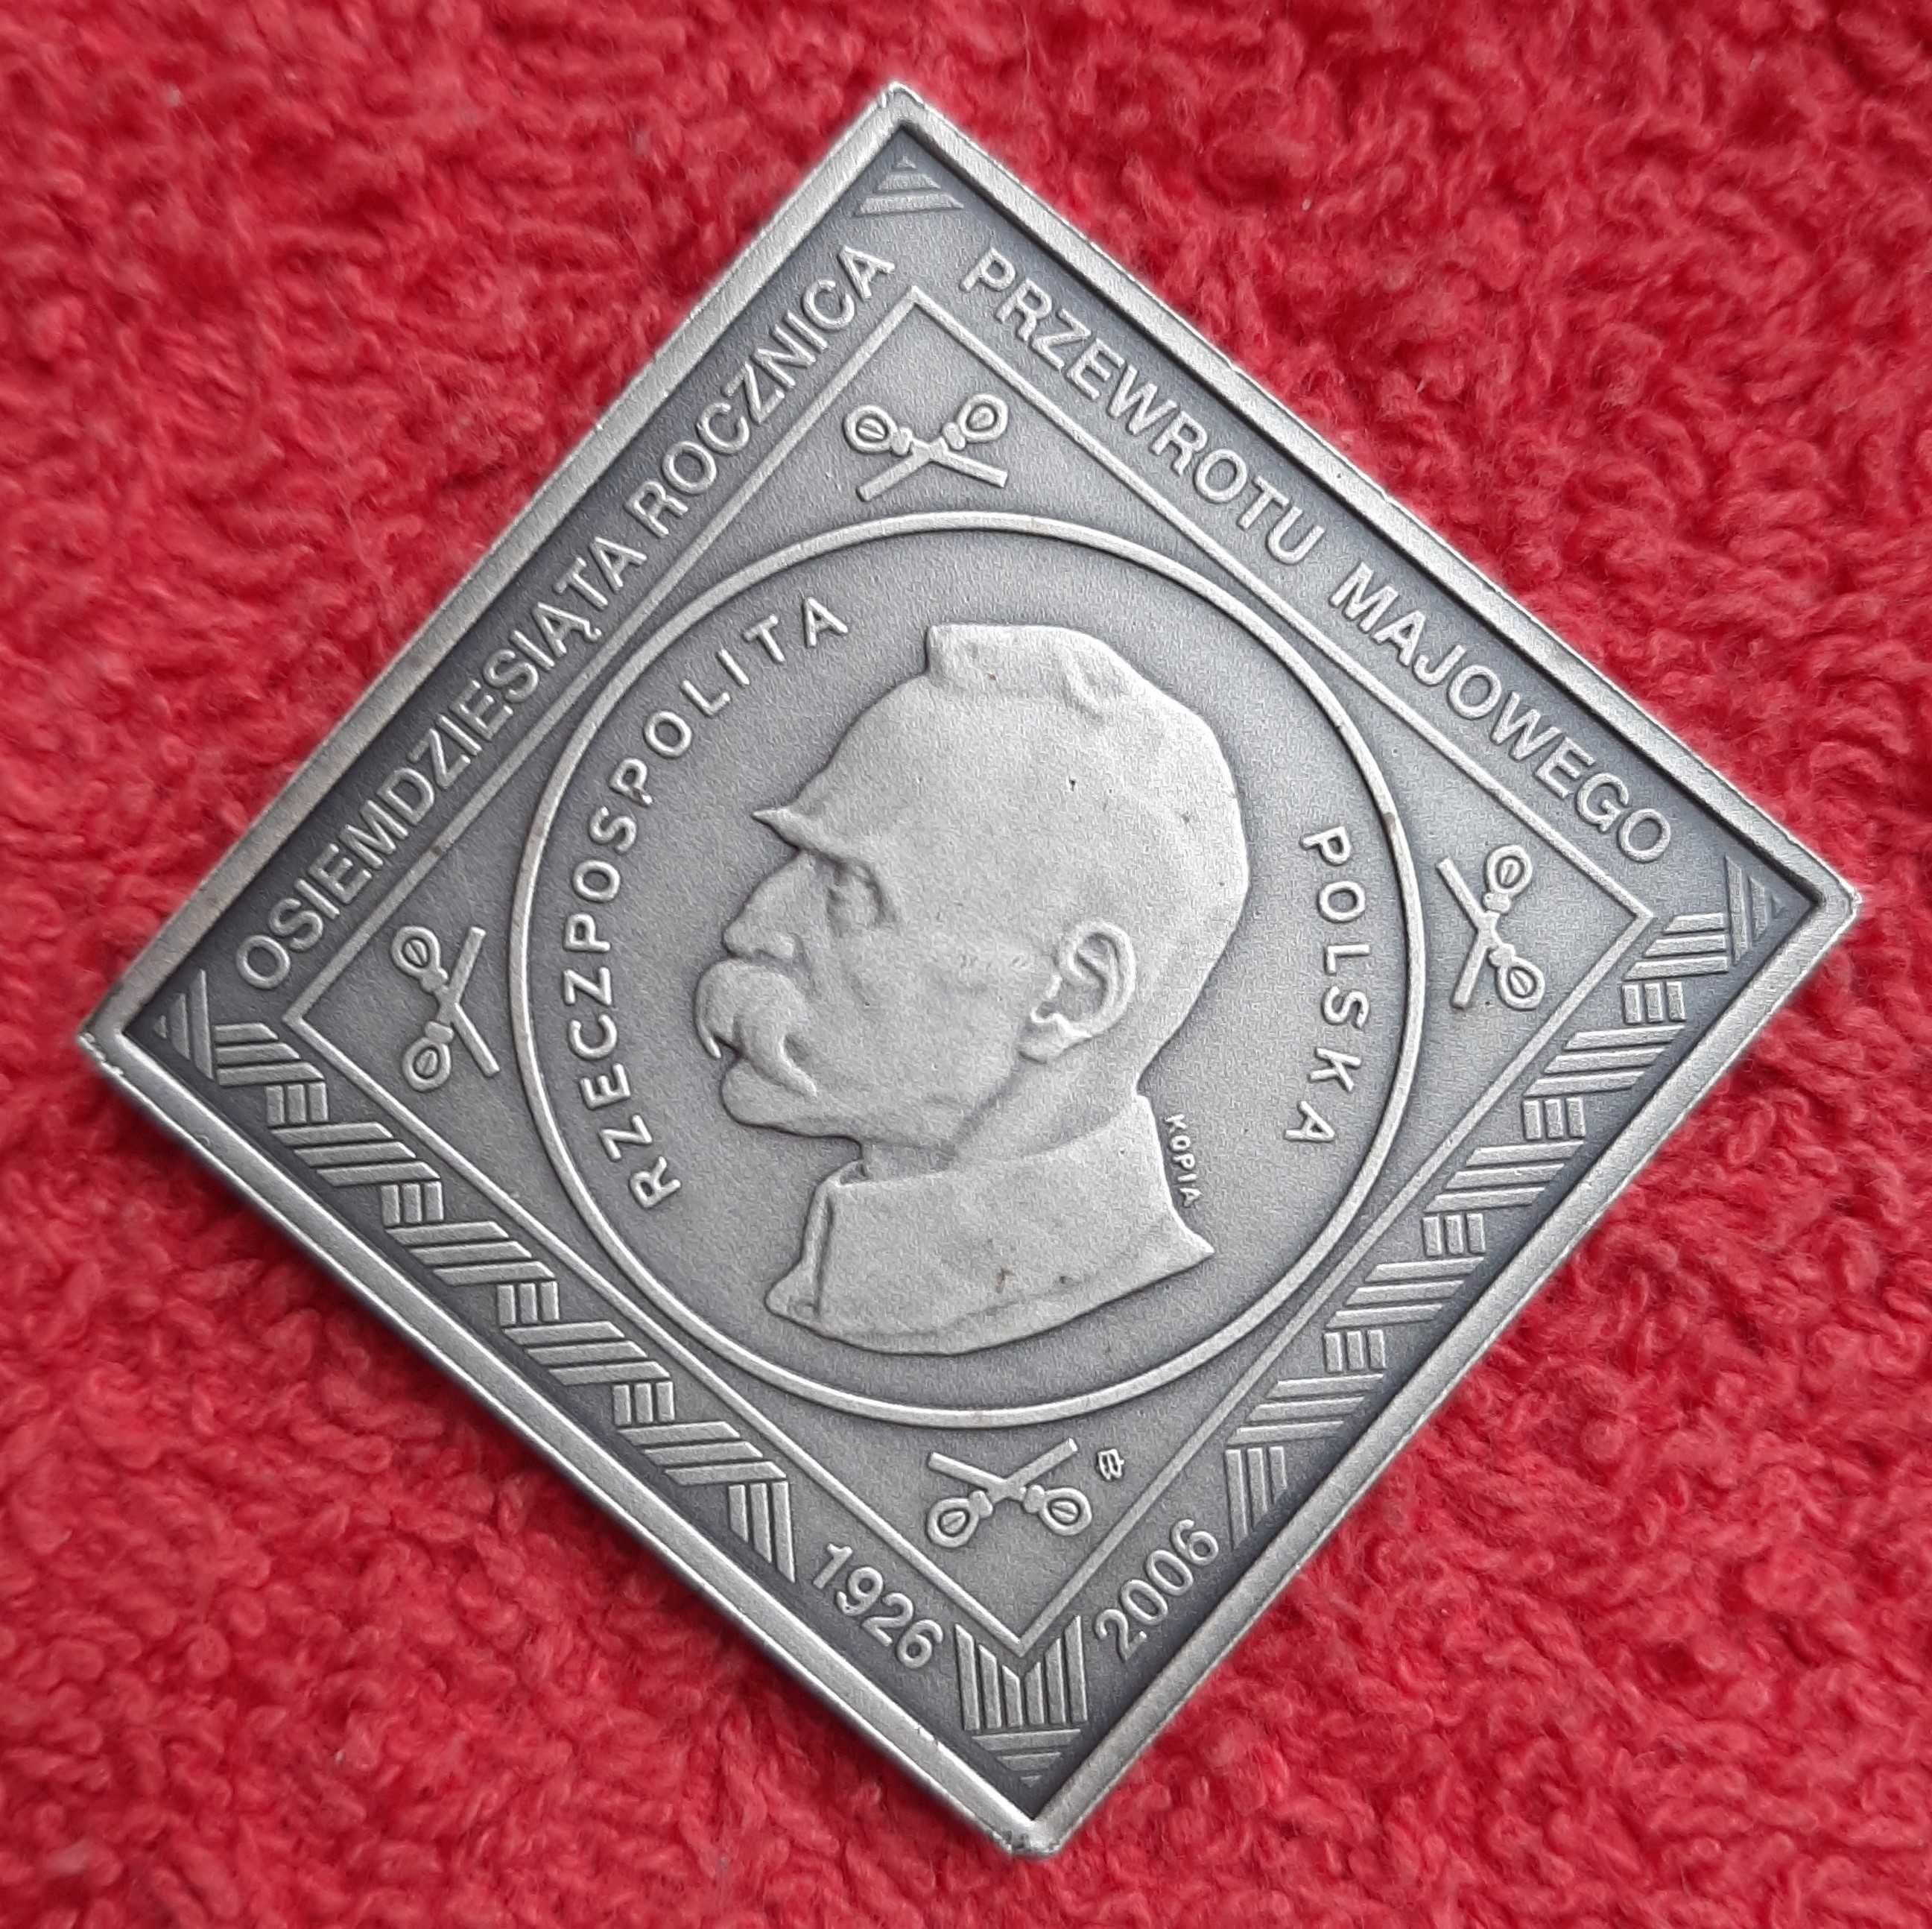 Klipa Józef Piłsudski 1922 - kopia z 2006 r. - mennica Warszawa